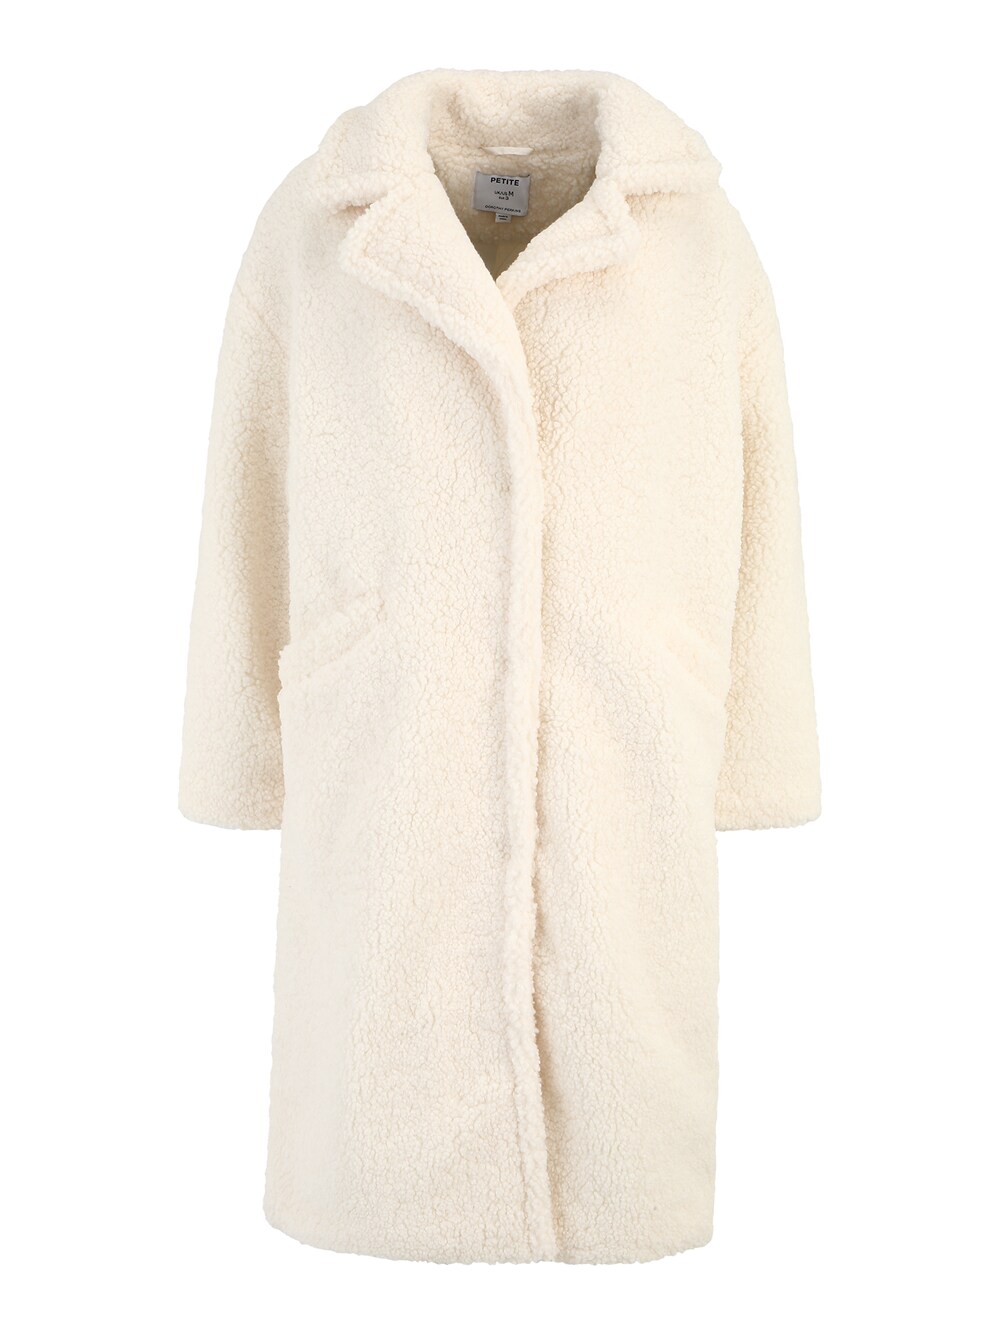 Межсезонное пальто Dorothy Perkins, крем цена и фото